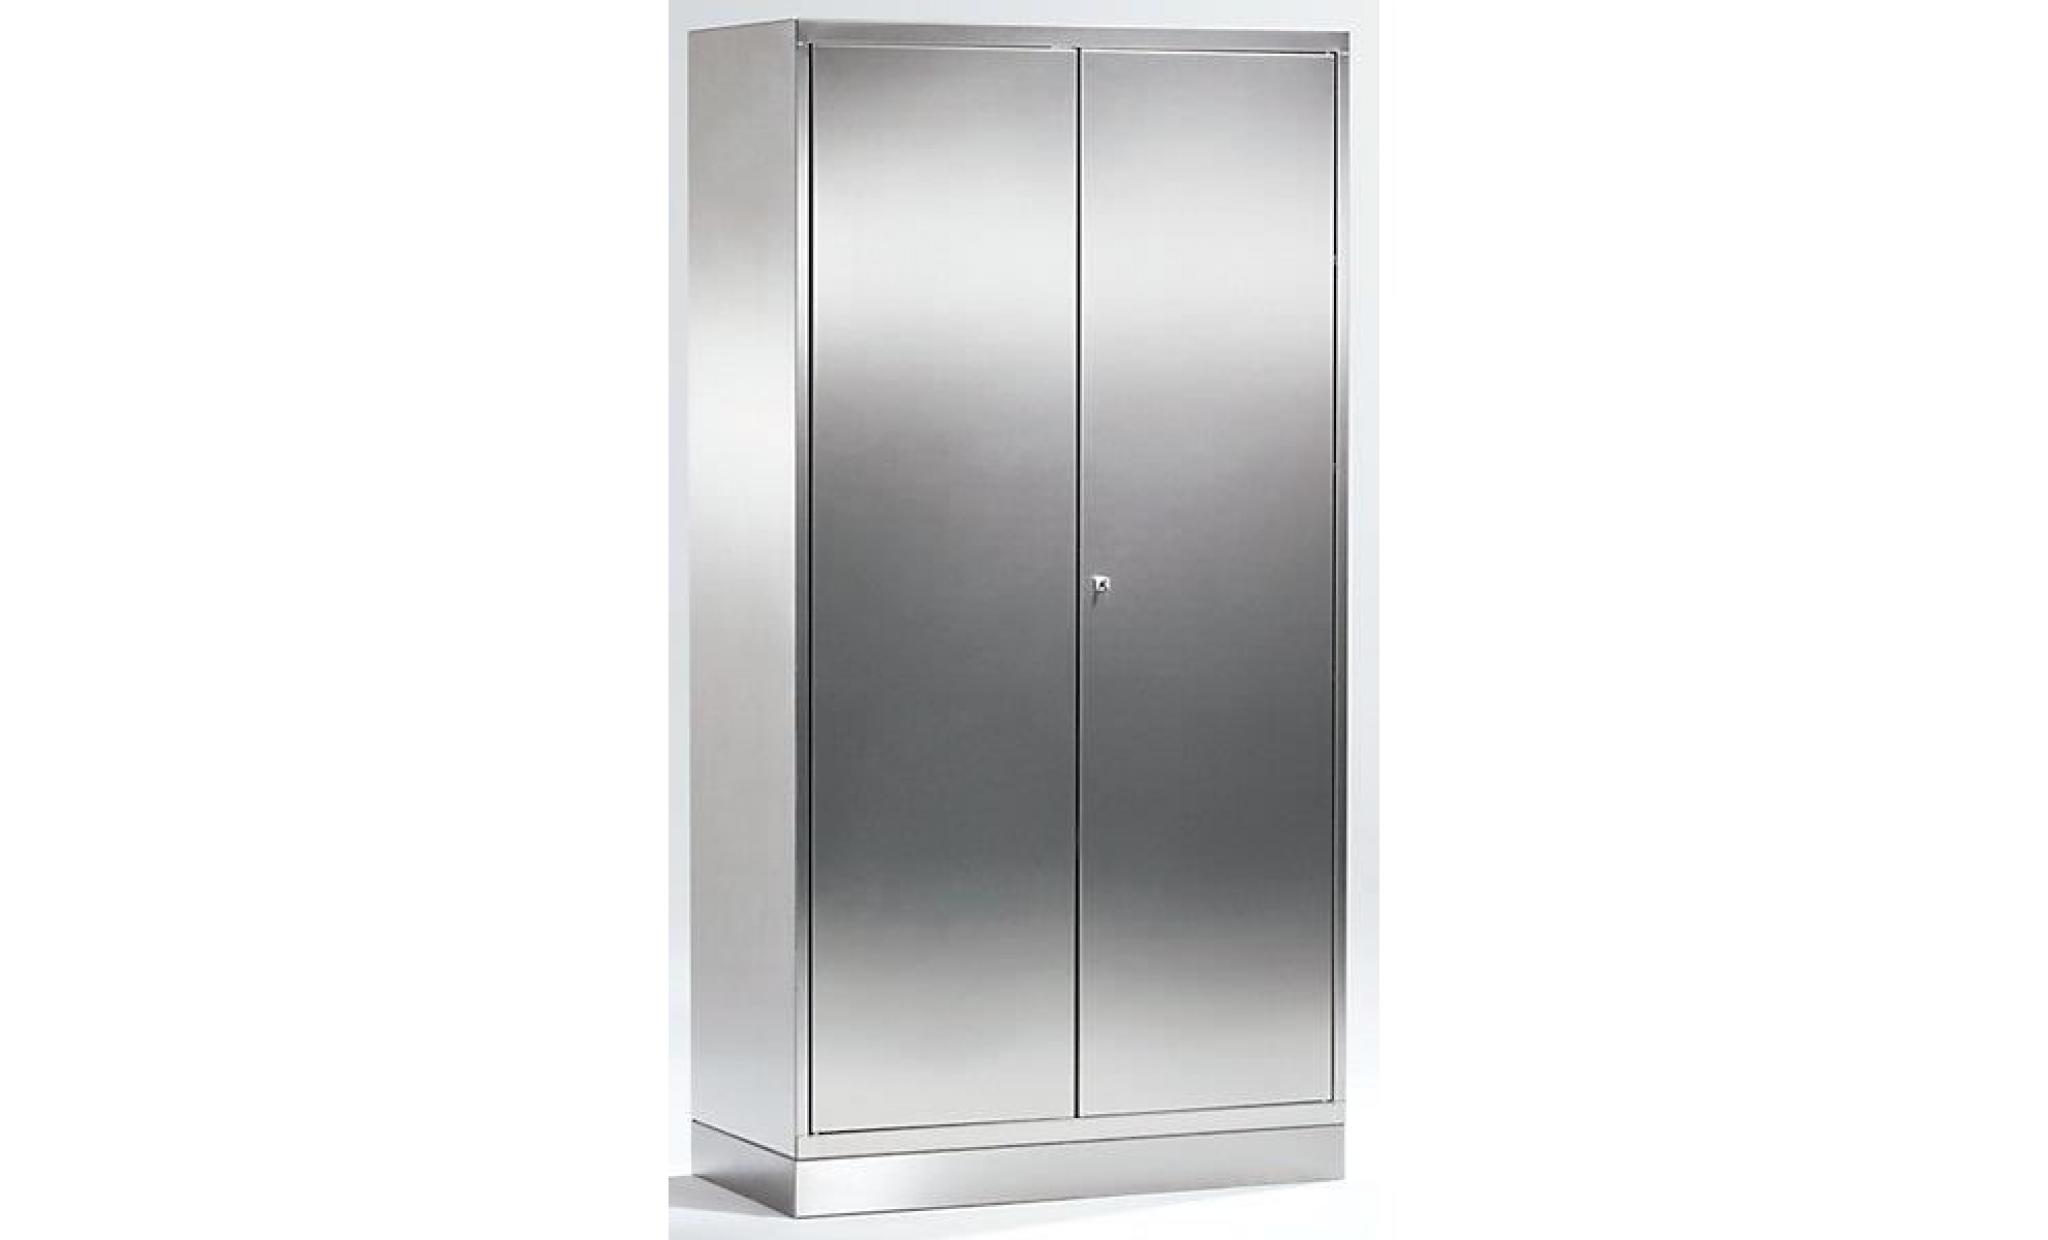 armoire universelle en inox   armoire à portes battantes h x l x p 1950 x 1000 x 400 mm   armoire armoire de vestiaire armoire pas cher